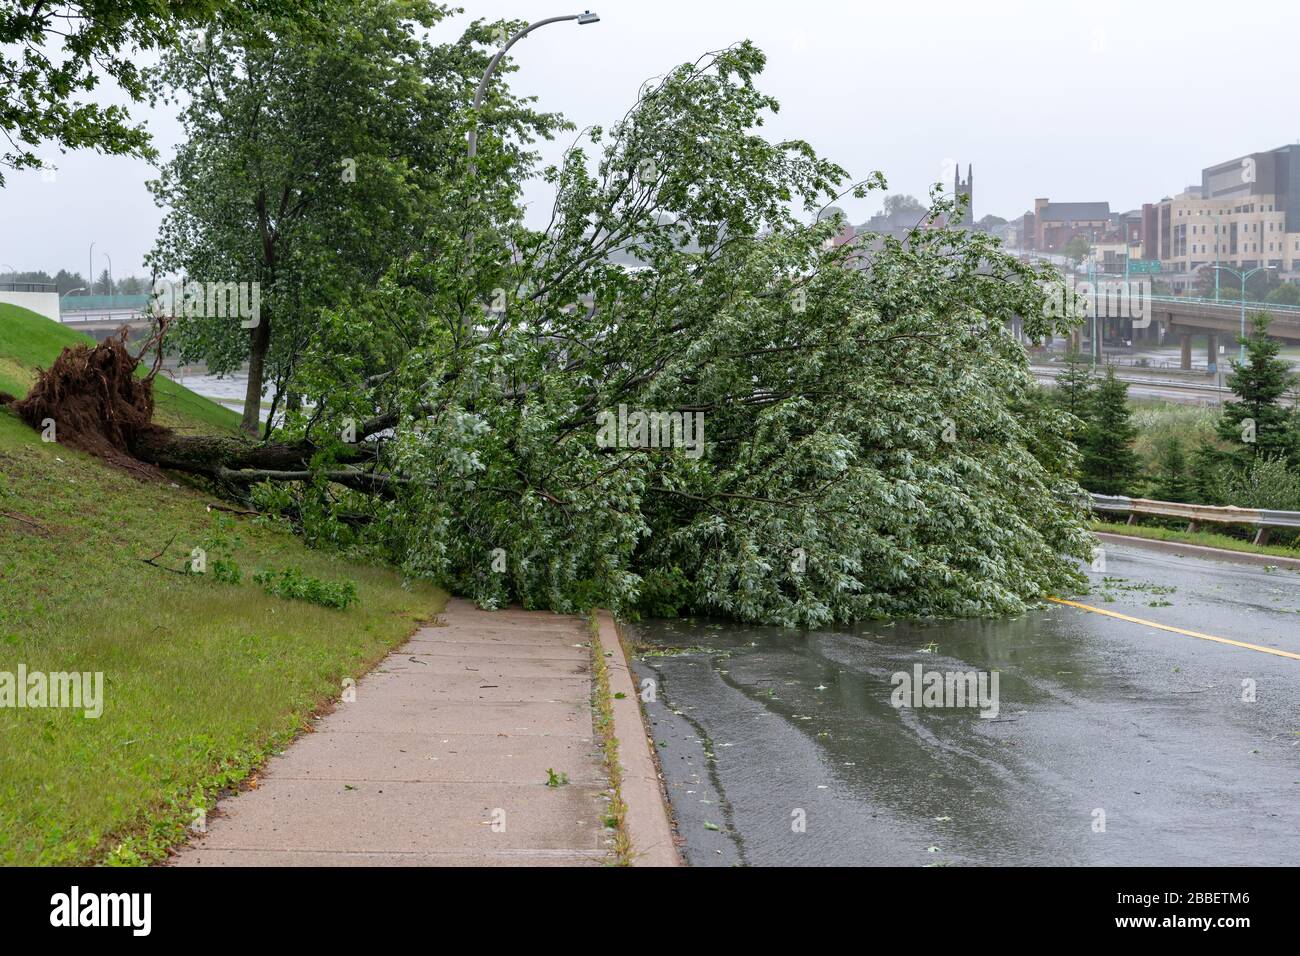 Un grand arbre est tombé sur une route. La route est partiellement bloquée. L'arbre est tombé en raison de vents violents pendant l'ouragan Dorian. Ciel couvert. Banque D'Images